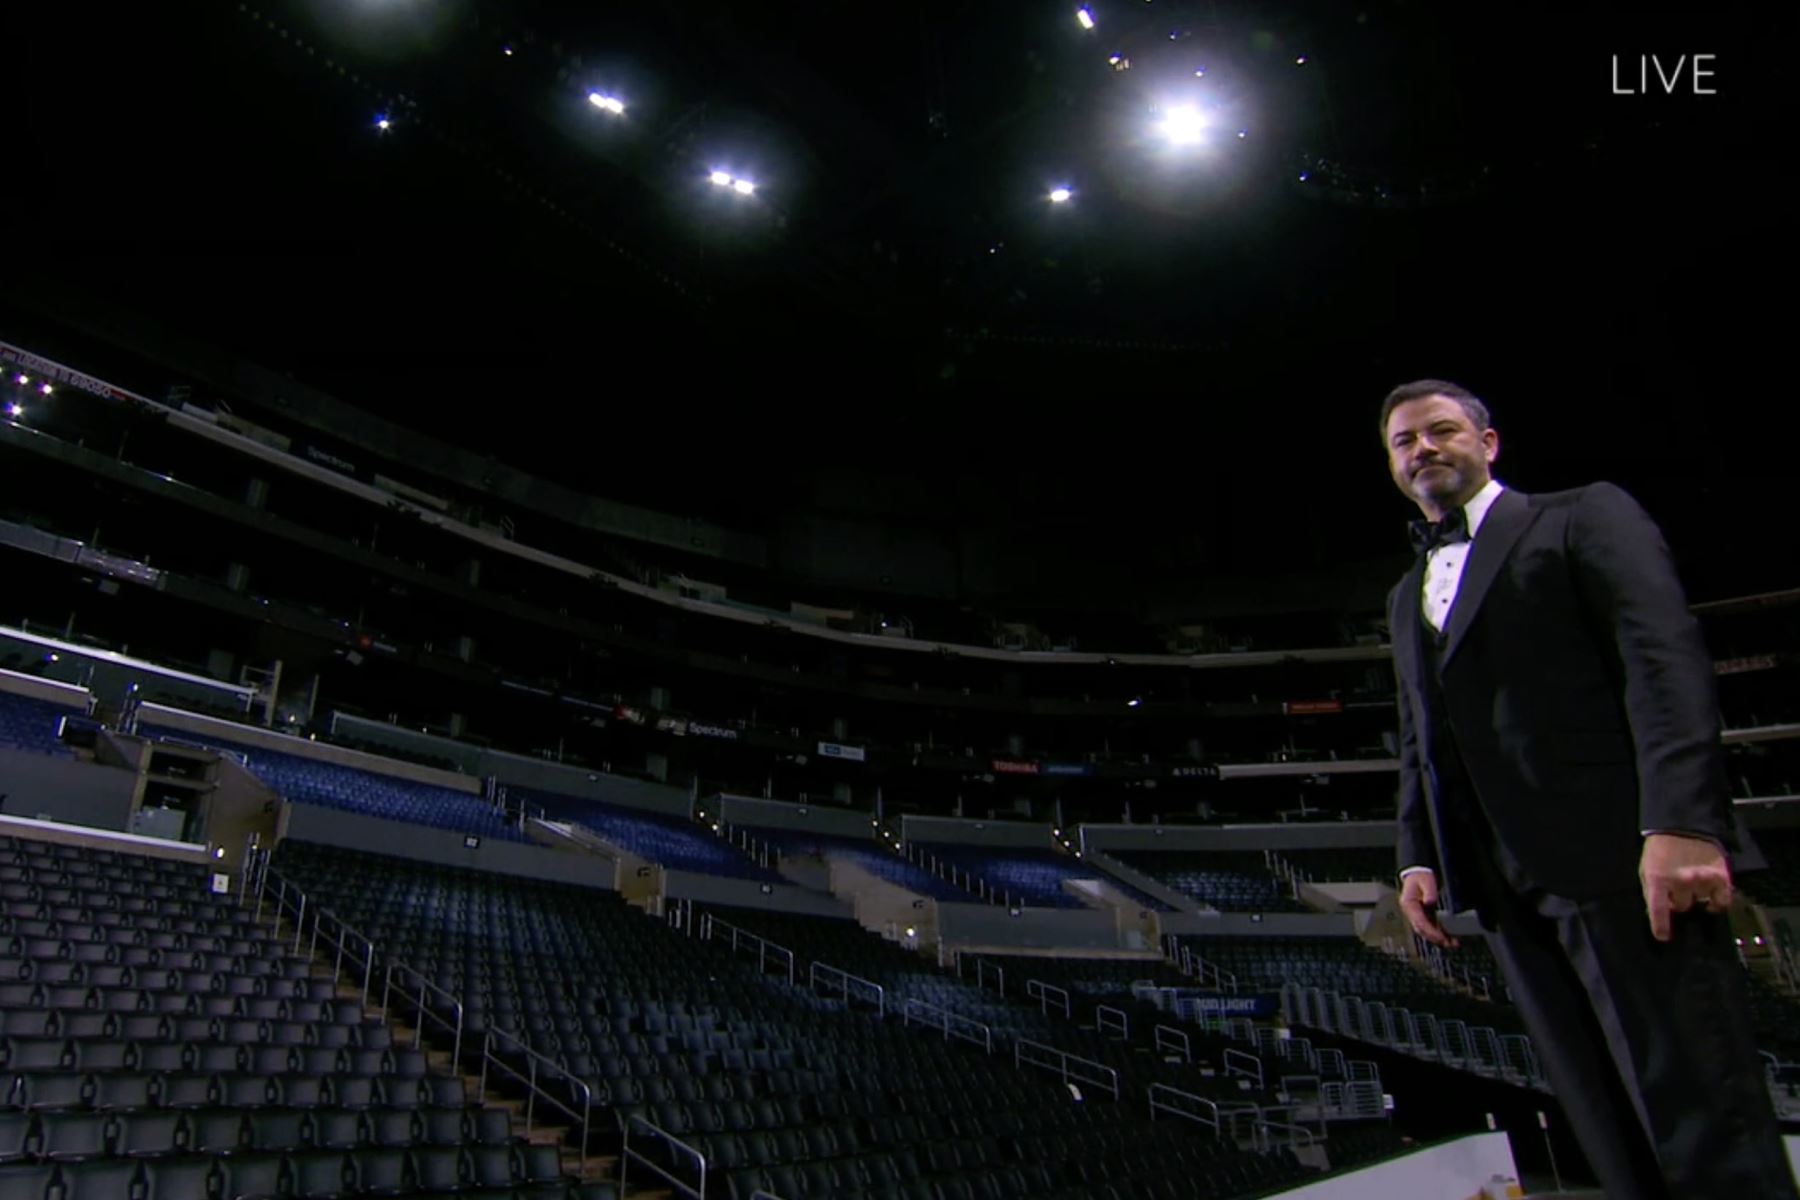 El presentador Jimmy Kimmel saluda antes de la presentación de la 72a ceremonia de los premios Primetime Emmy que se llevó a cabo virtualmente. Foto: AFP